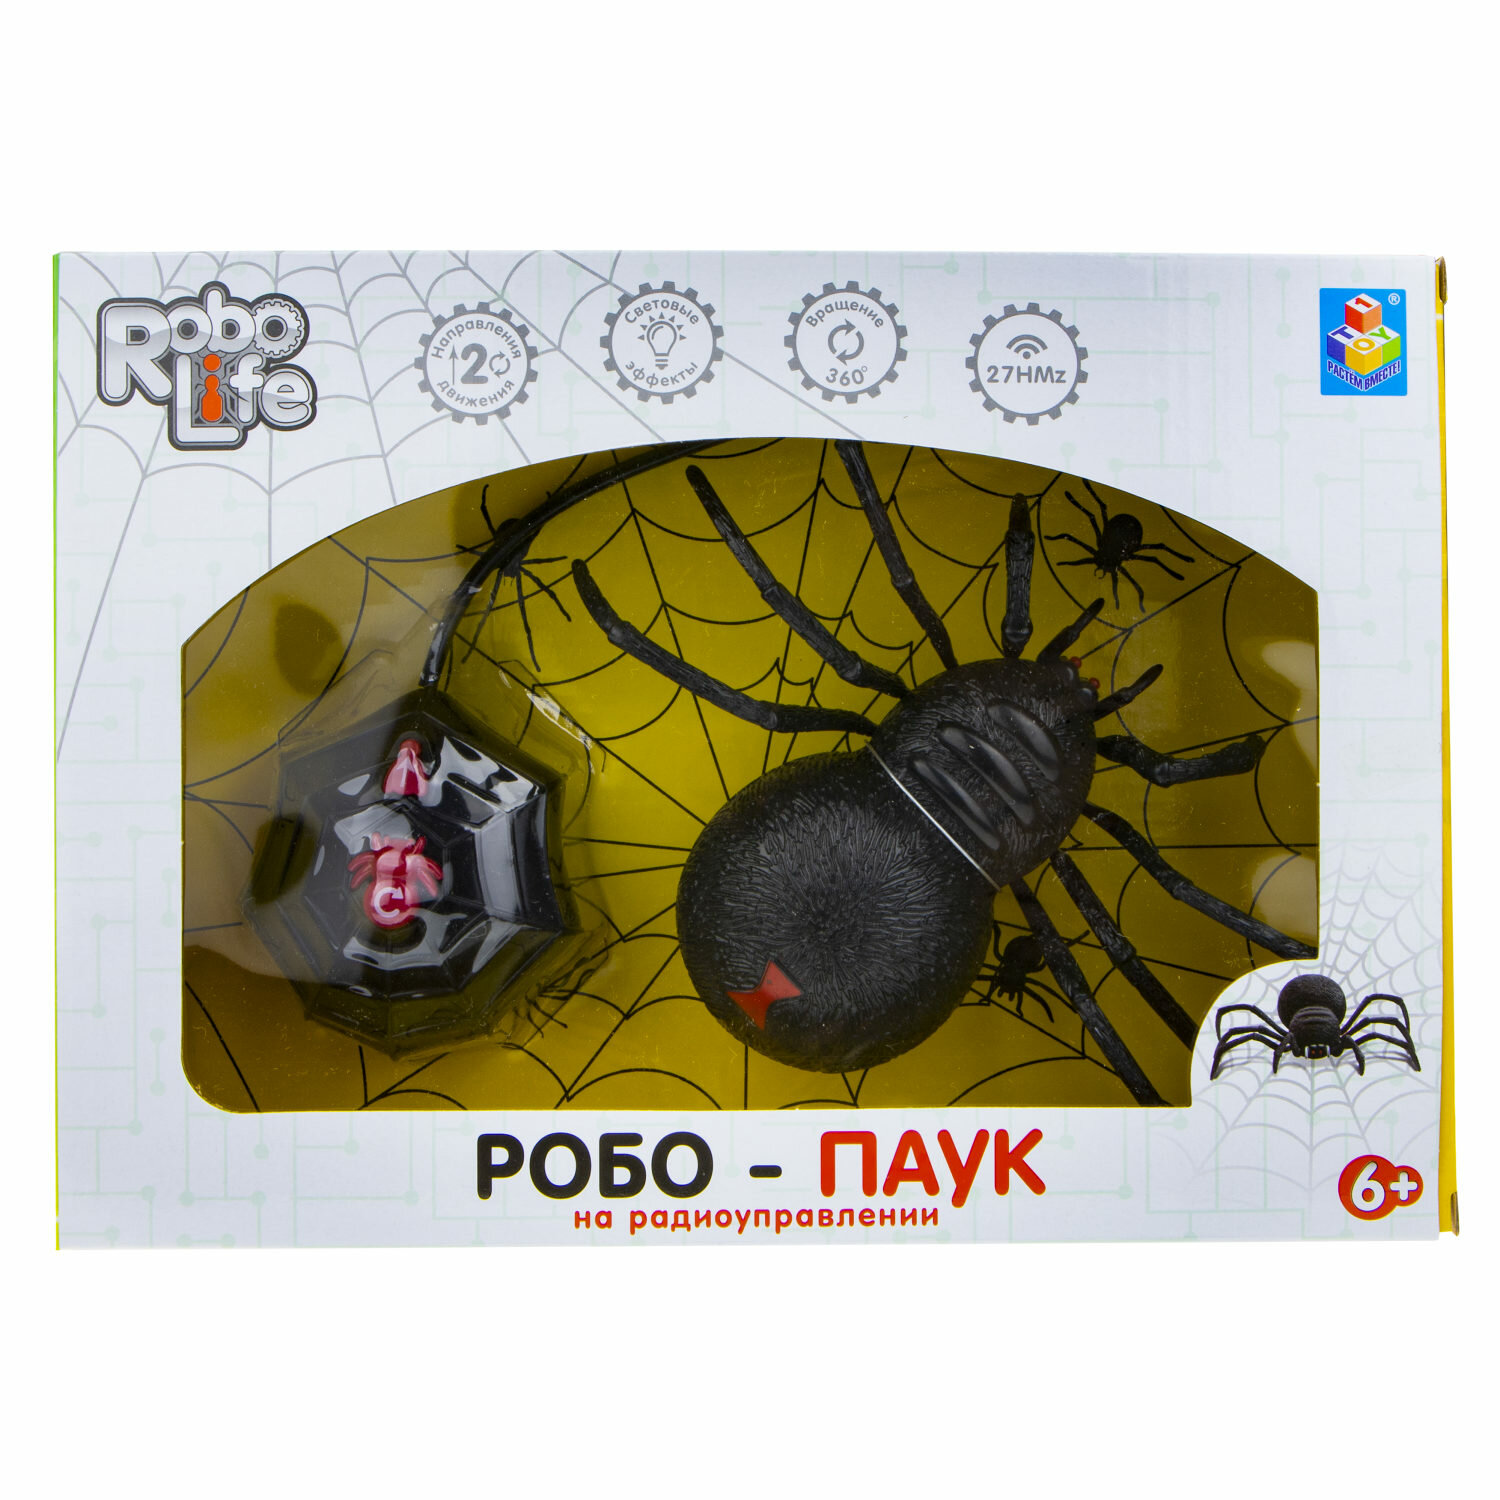 1toy T19034 RoboLife игрушка "Робо-паук" (свет, звук, движение) на р/у - фото №13